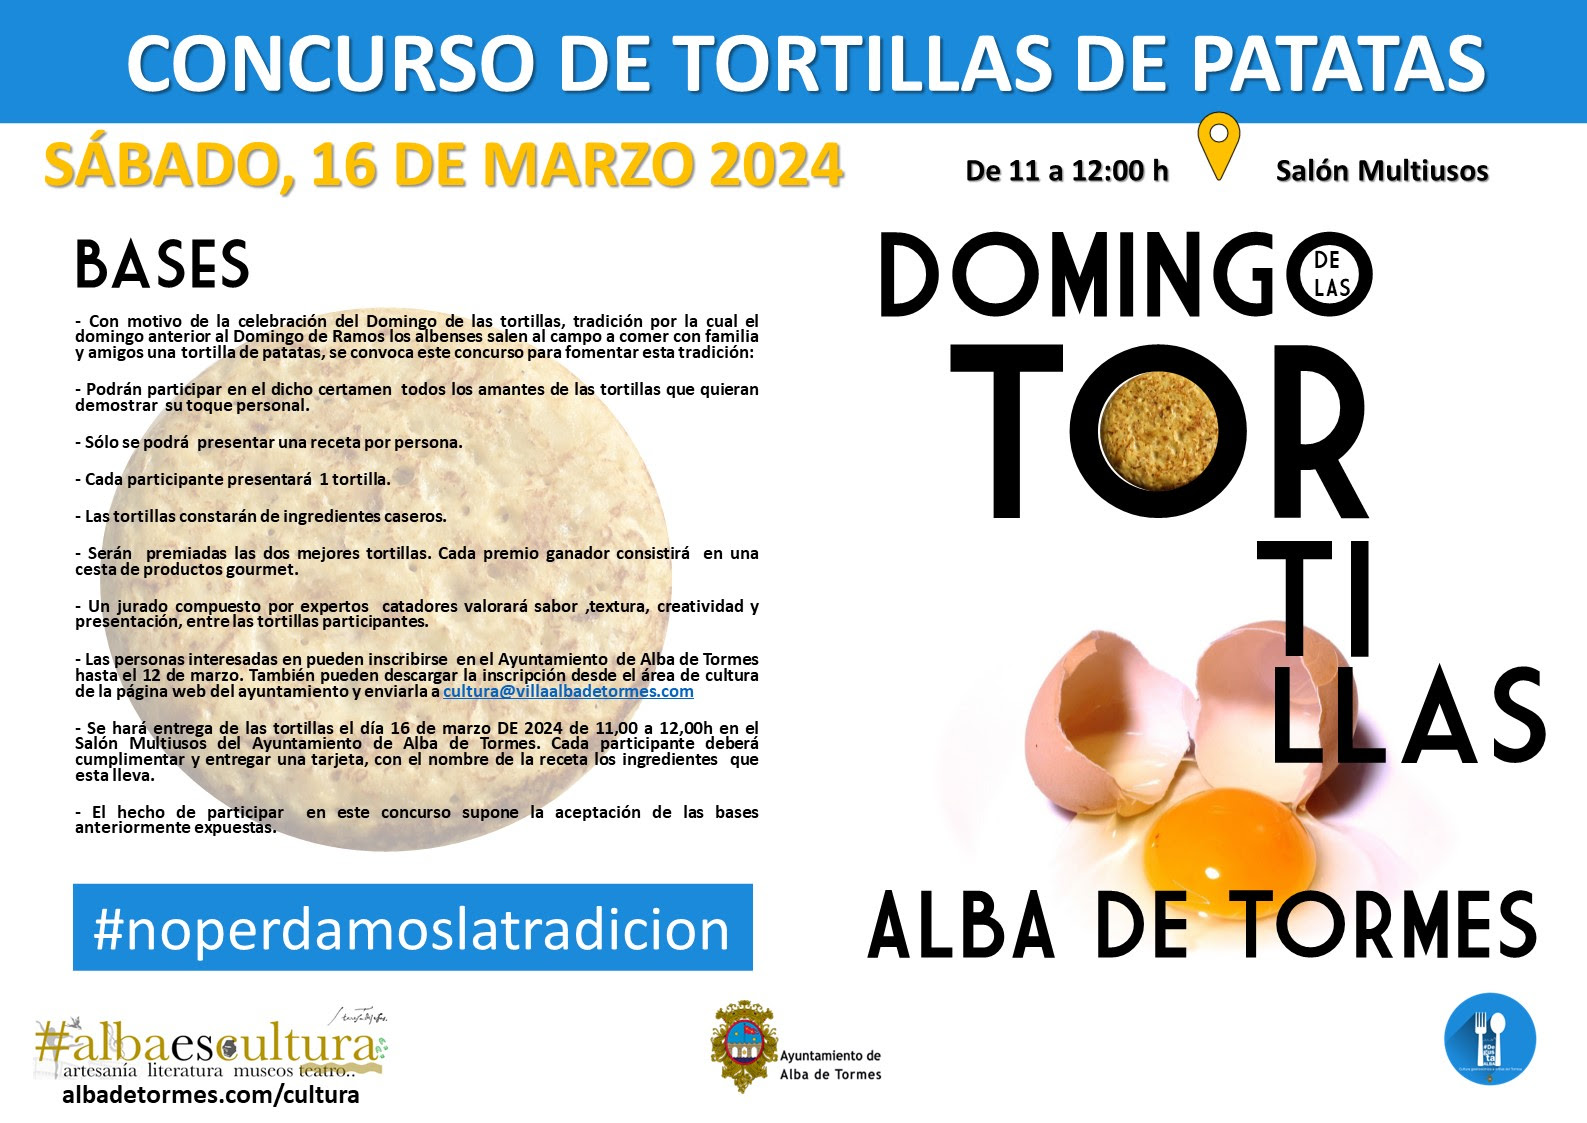 ALBA DE TORMES - Concurso de tortillas de patatas